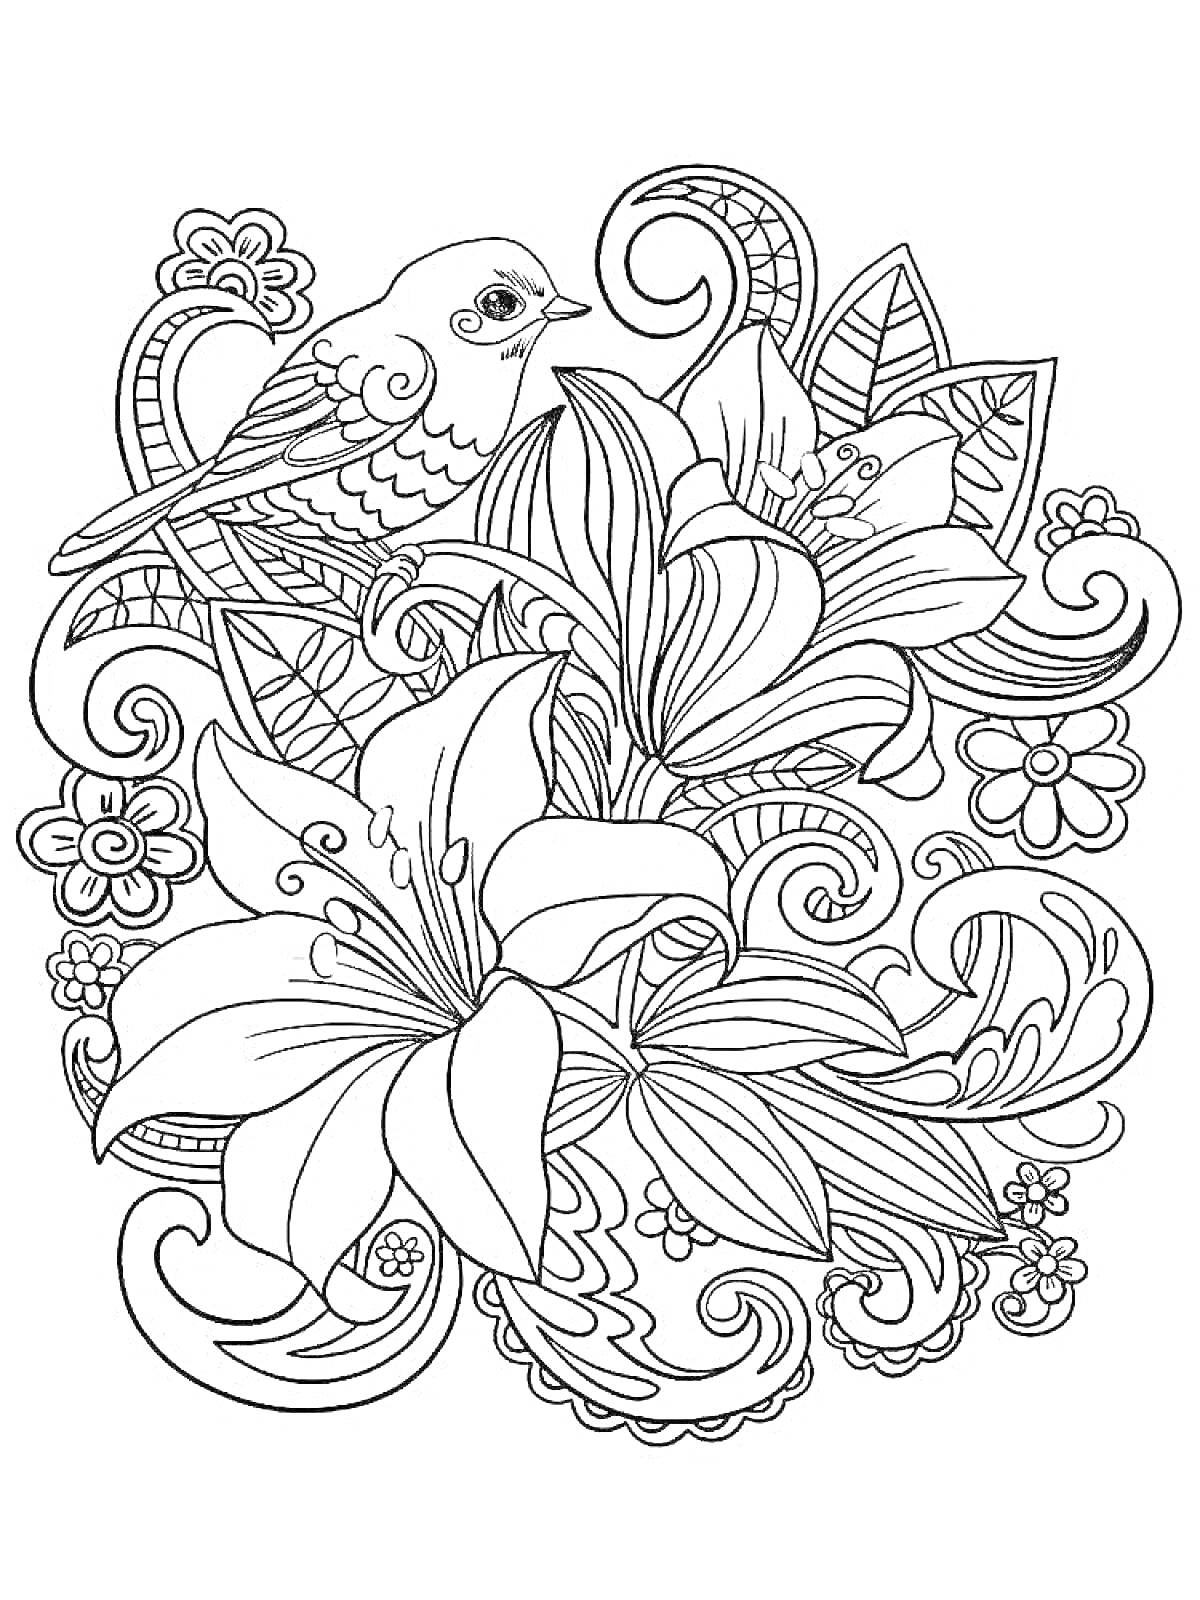 Раскраска Цветочный узор с птицей и крупными лилиями